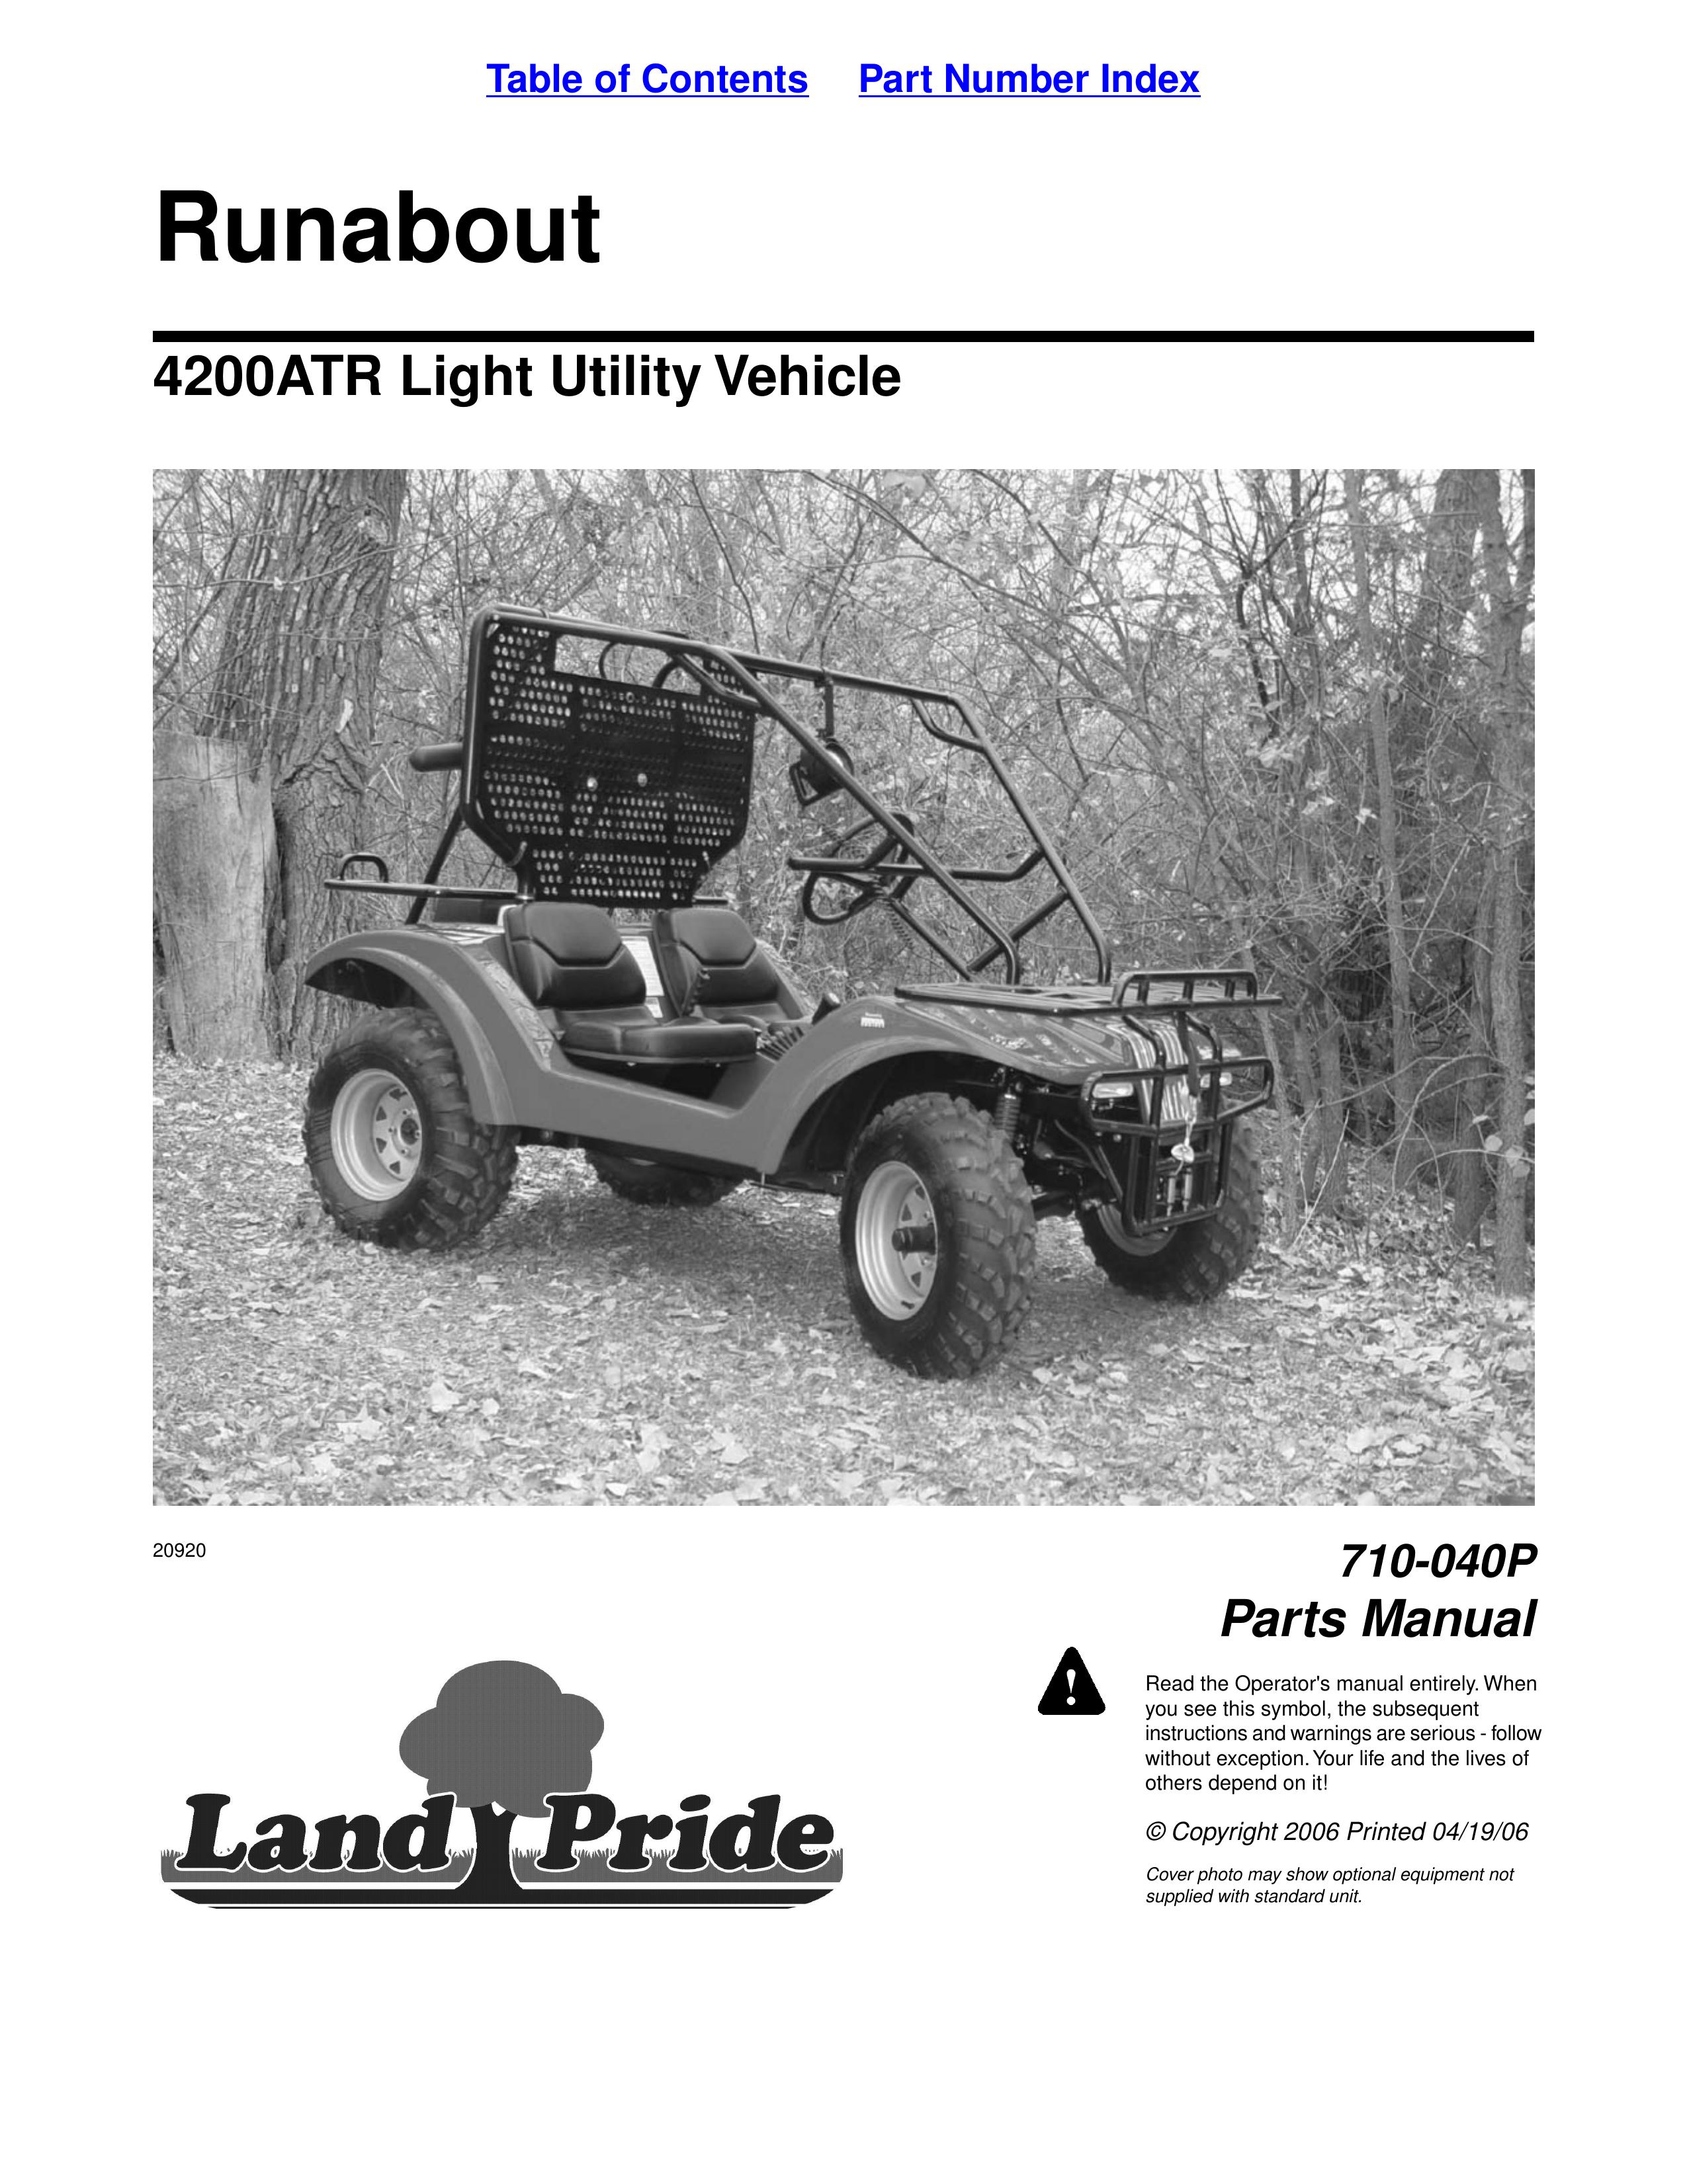 Land Pride 710-040P Utility Vehicle User Manual